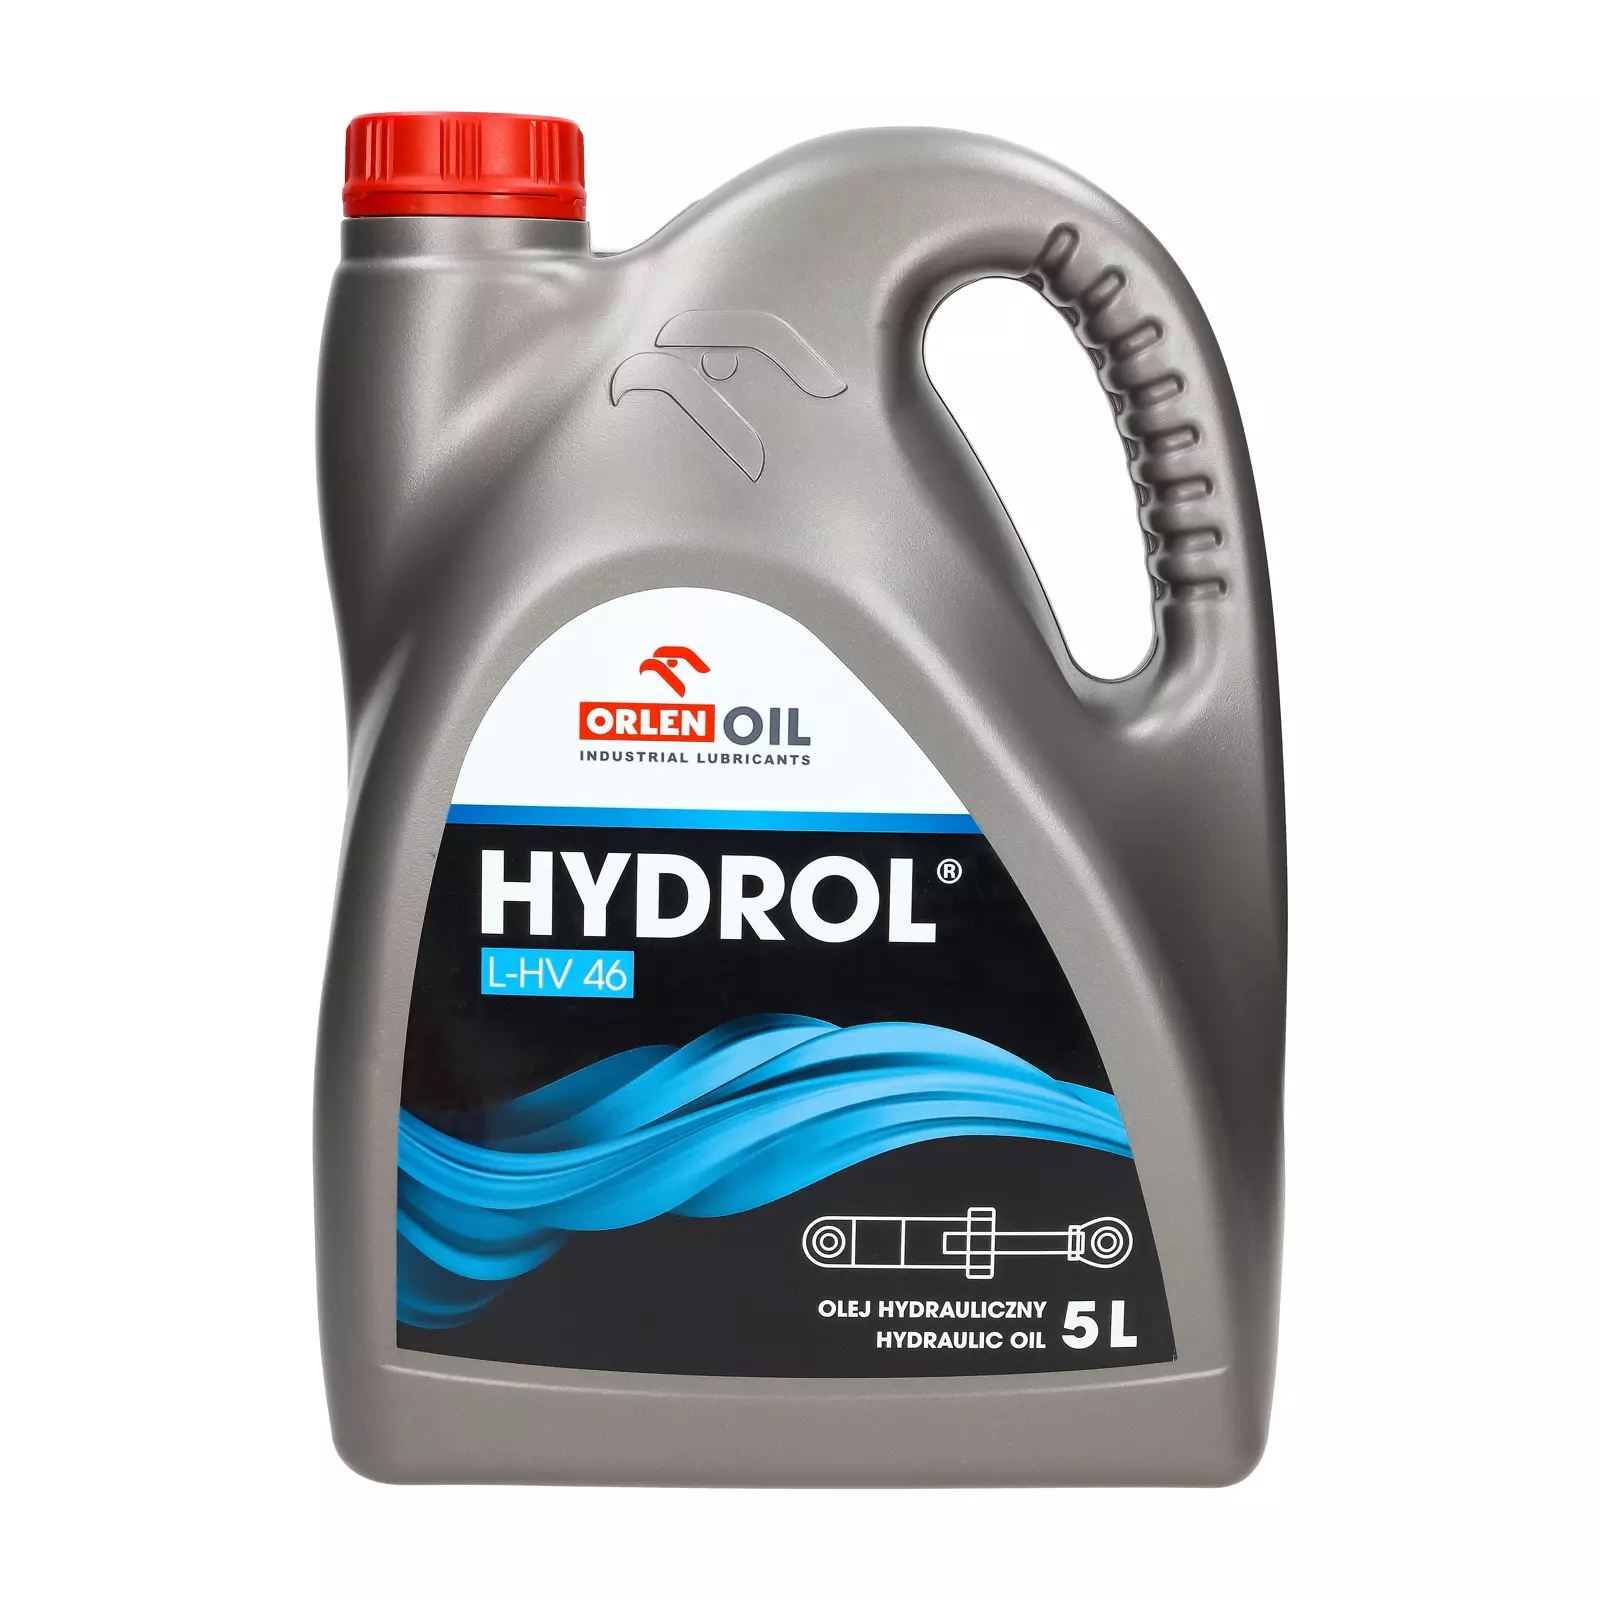 Гидравлическое масло Orlen HYDROL L-HV 46 5л.